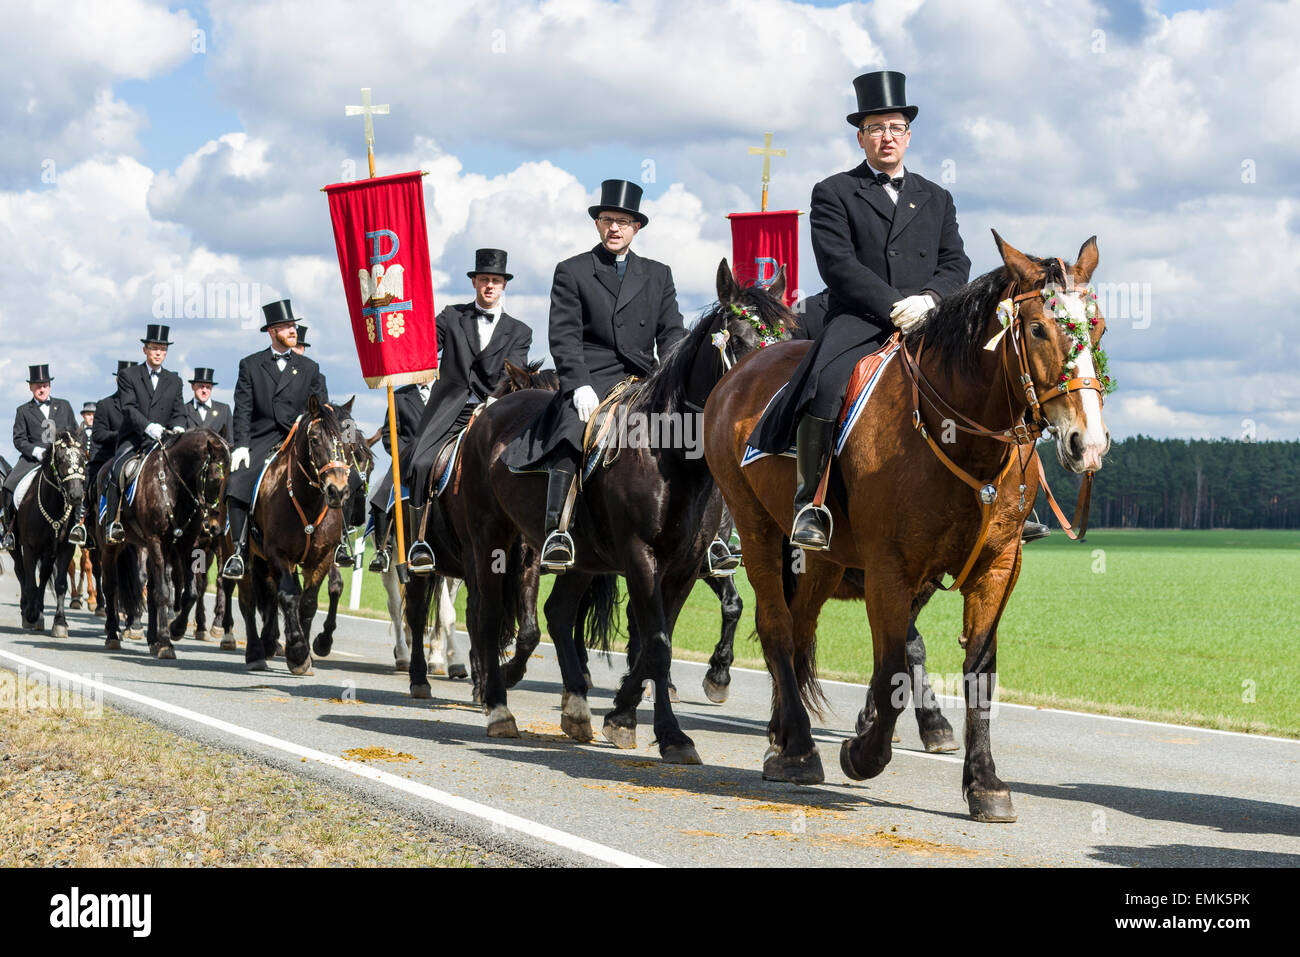 Prozession zu Pferde, sorbische kulturelle Tradition am Ostersonntag, gefolgt von Hunderten von Männern, Ralbitz, Sachsen, Deutschland Stockfoto